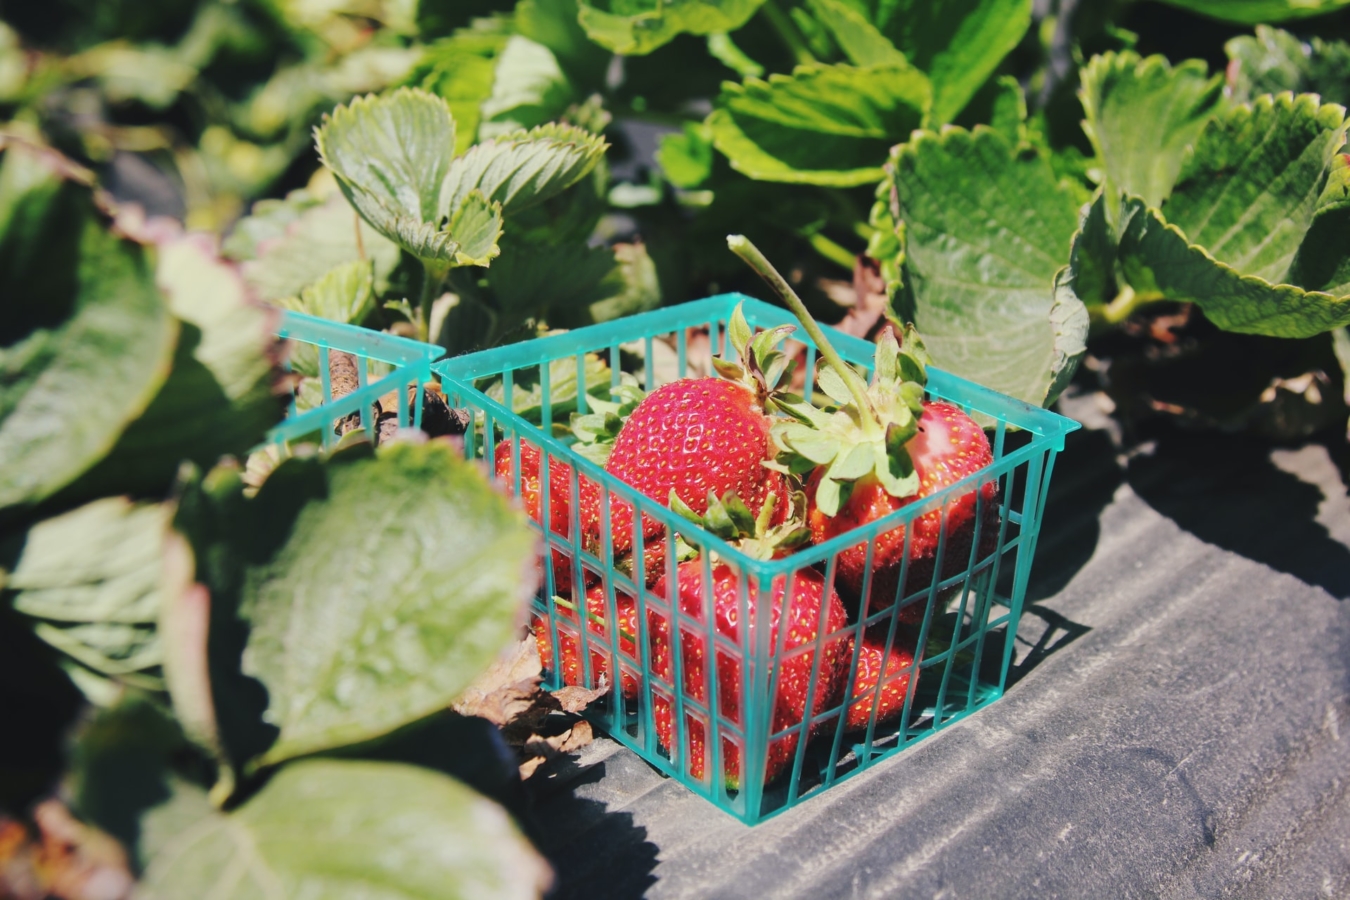 イチゴ 苺 の苗をランナーから増やす方法 苗作りの時期 手順 注意点 Hanasaku